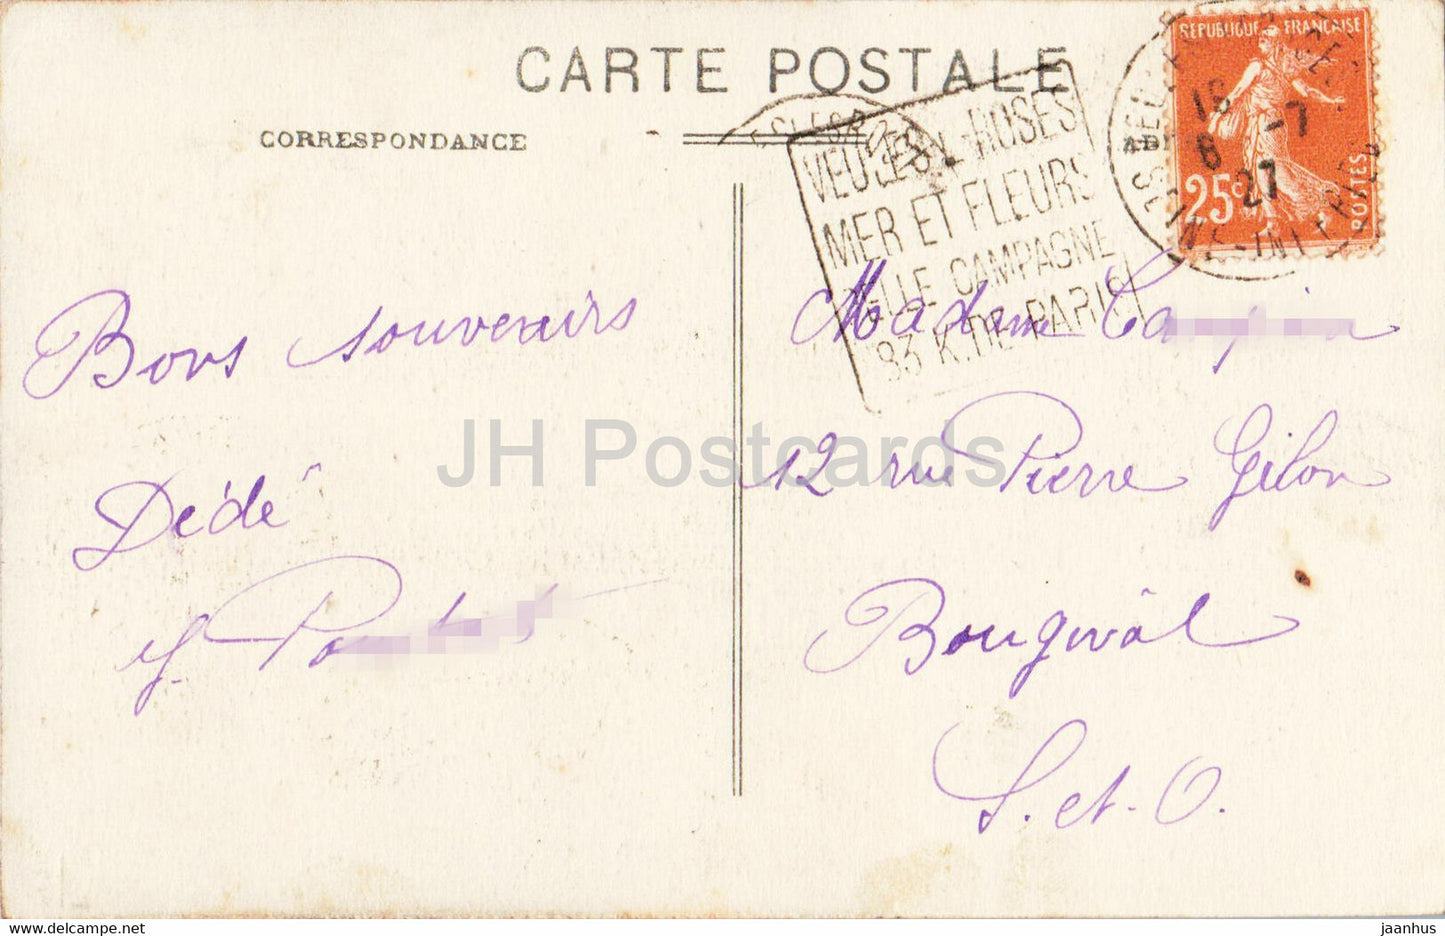 Veules les Rosse Roses - Villa la Terrasse - old postcard - 1927 - France - used